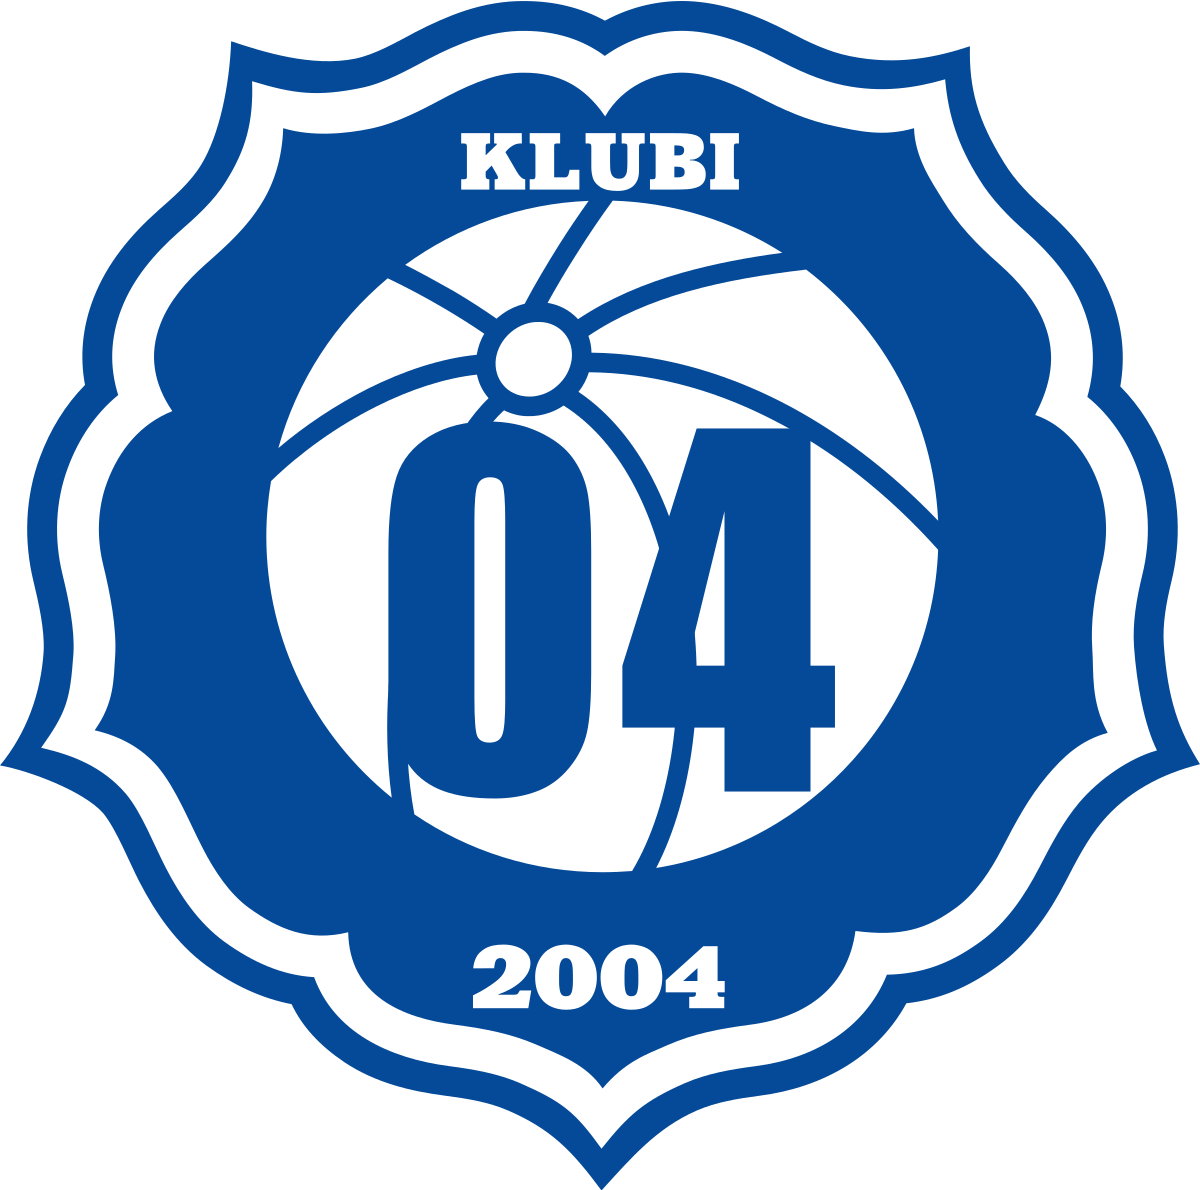 Клуби 04 - Logo